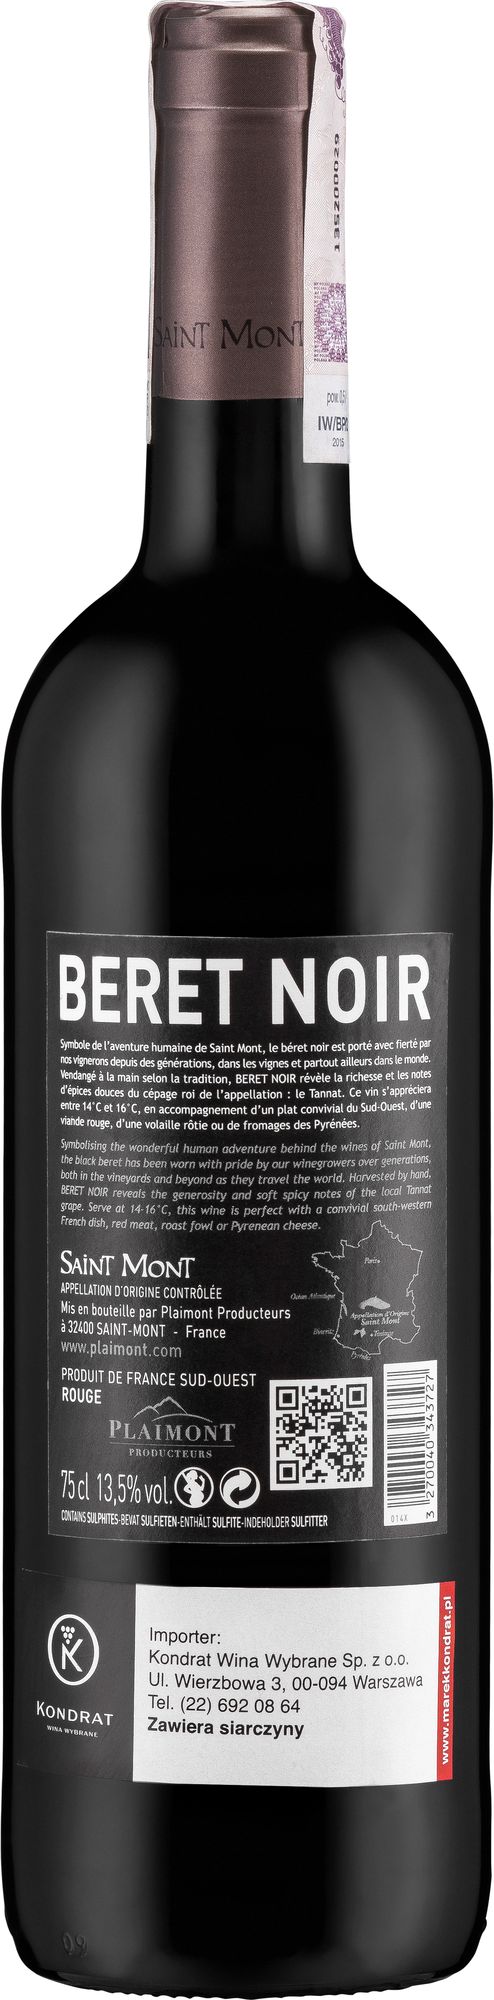 Wino Plaimont Beret Noir Saint Mont AOC